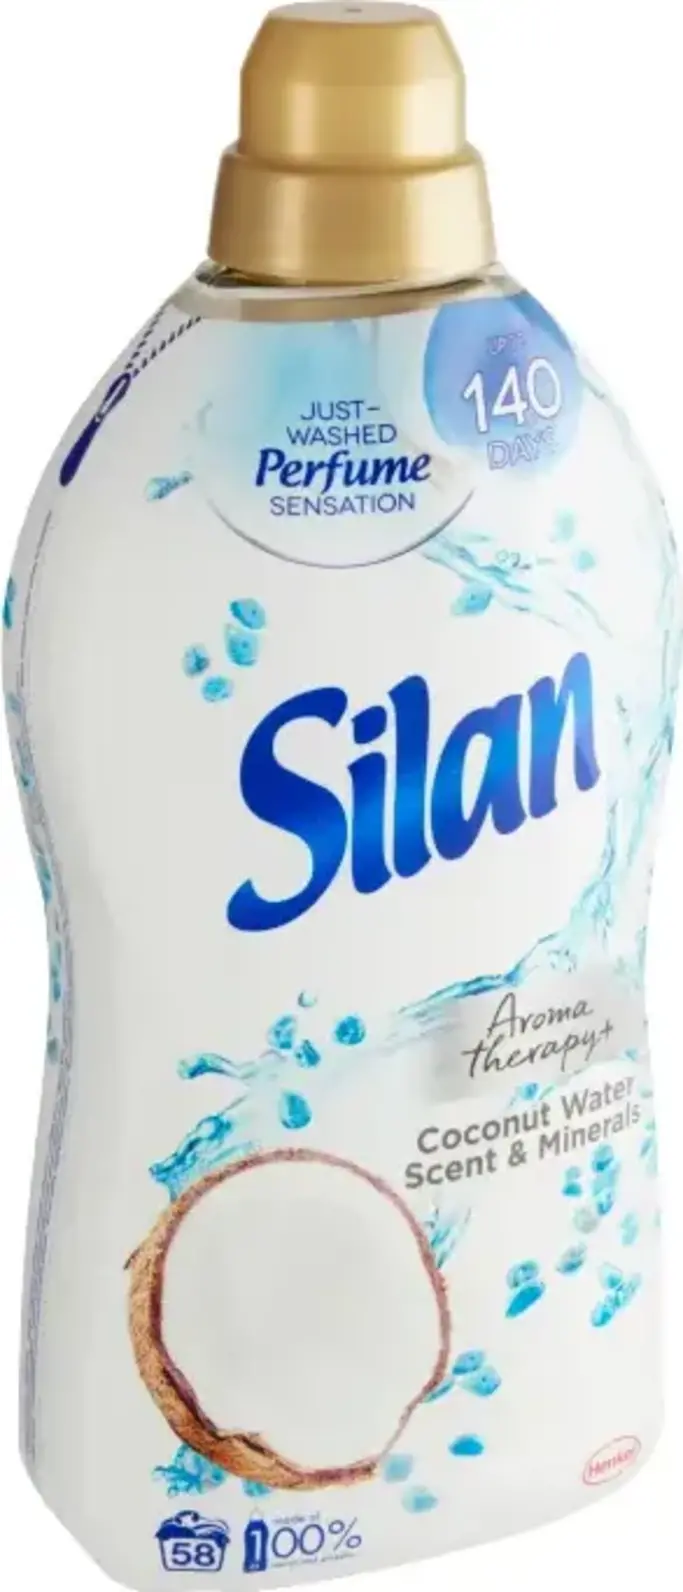 Silan Aromatherapy+ Coconut Water Scent & Minerals aviváž 1450 ml (58 praní)